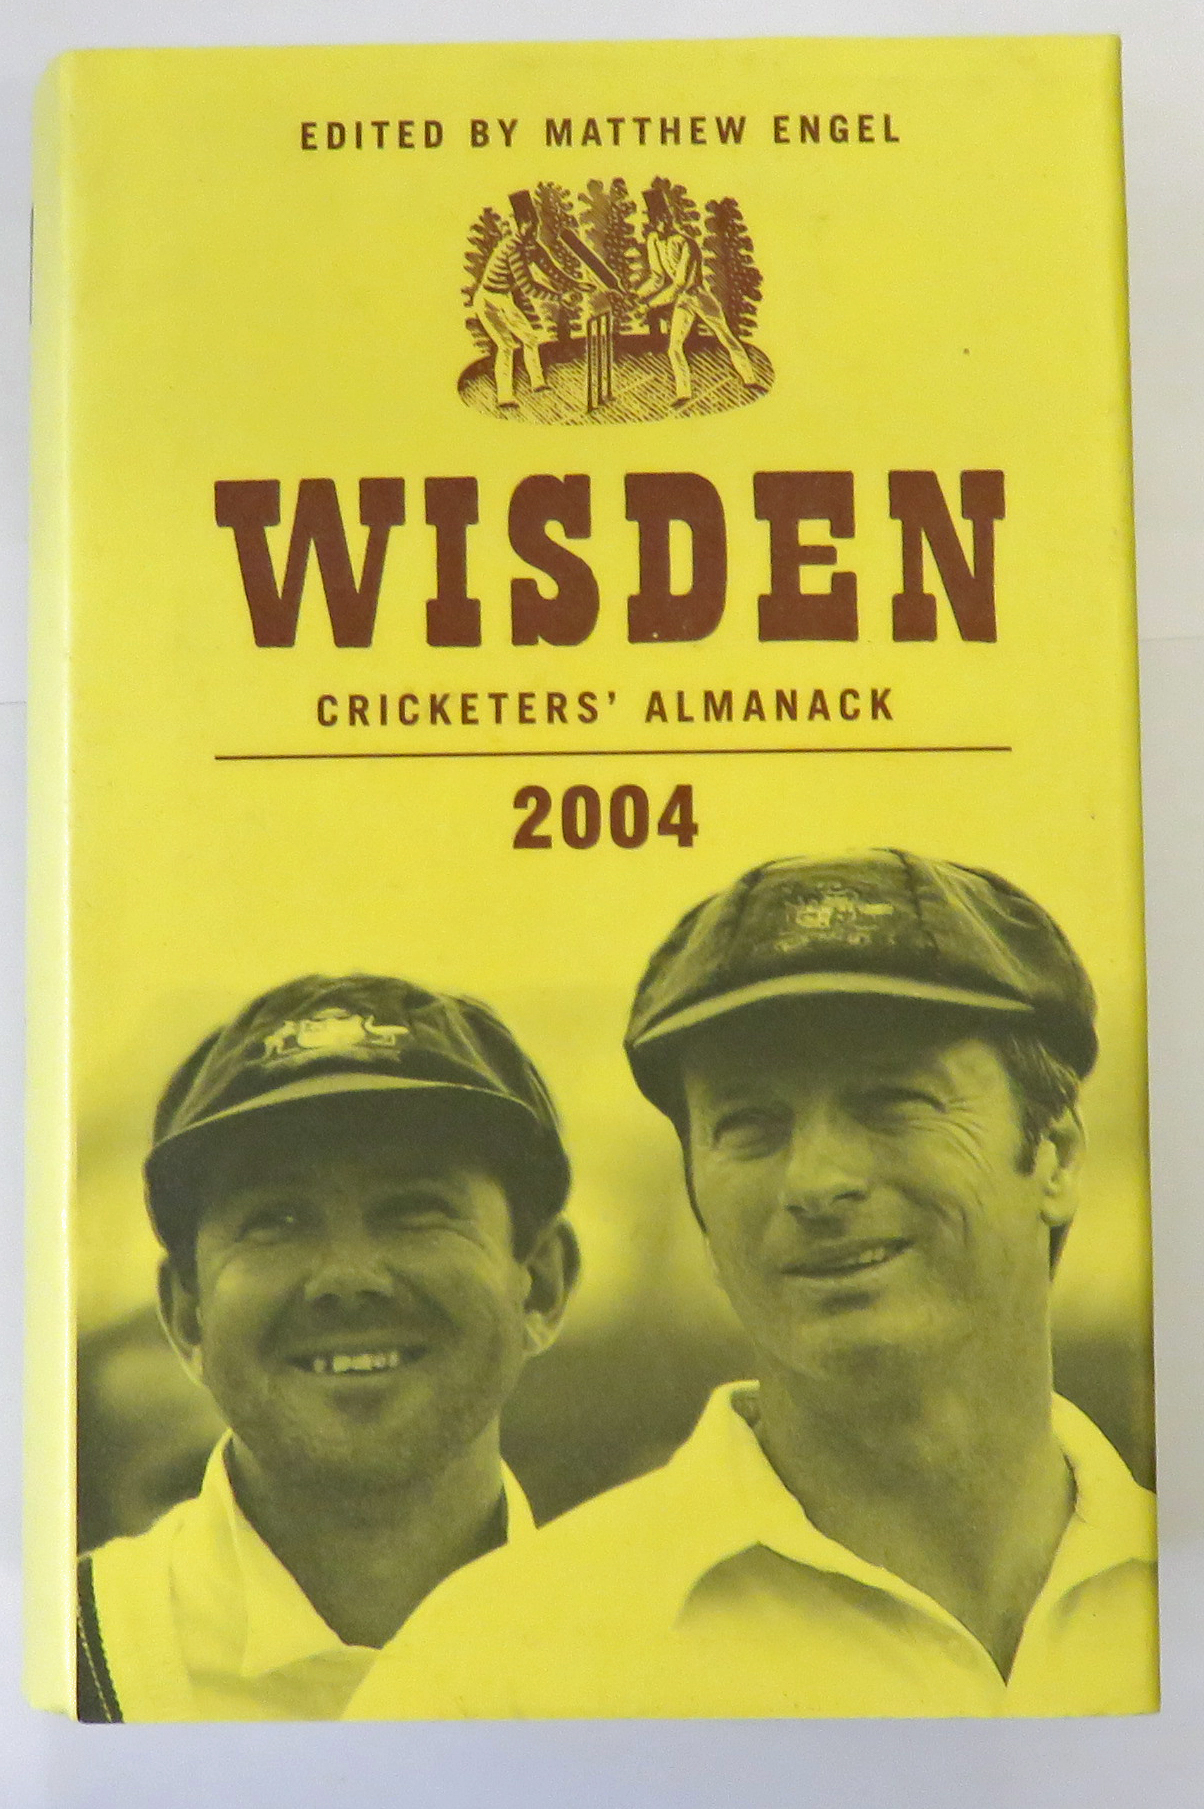 Wisden Cricketers' Almanack 2004